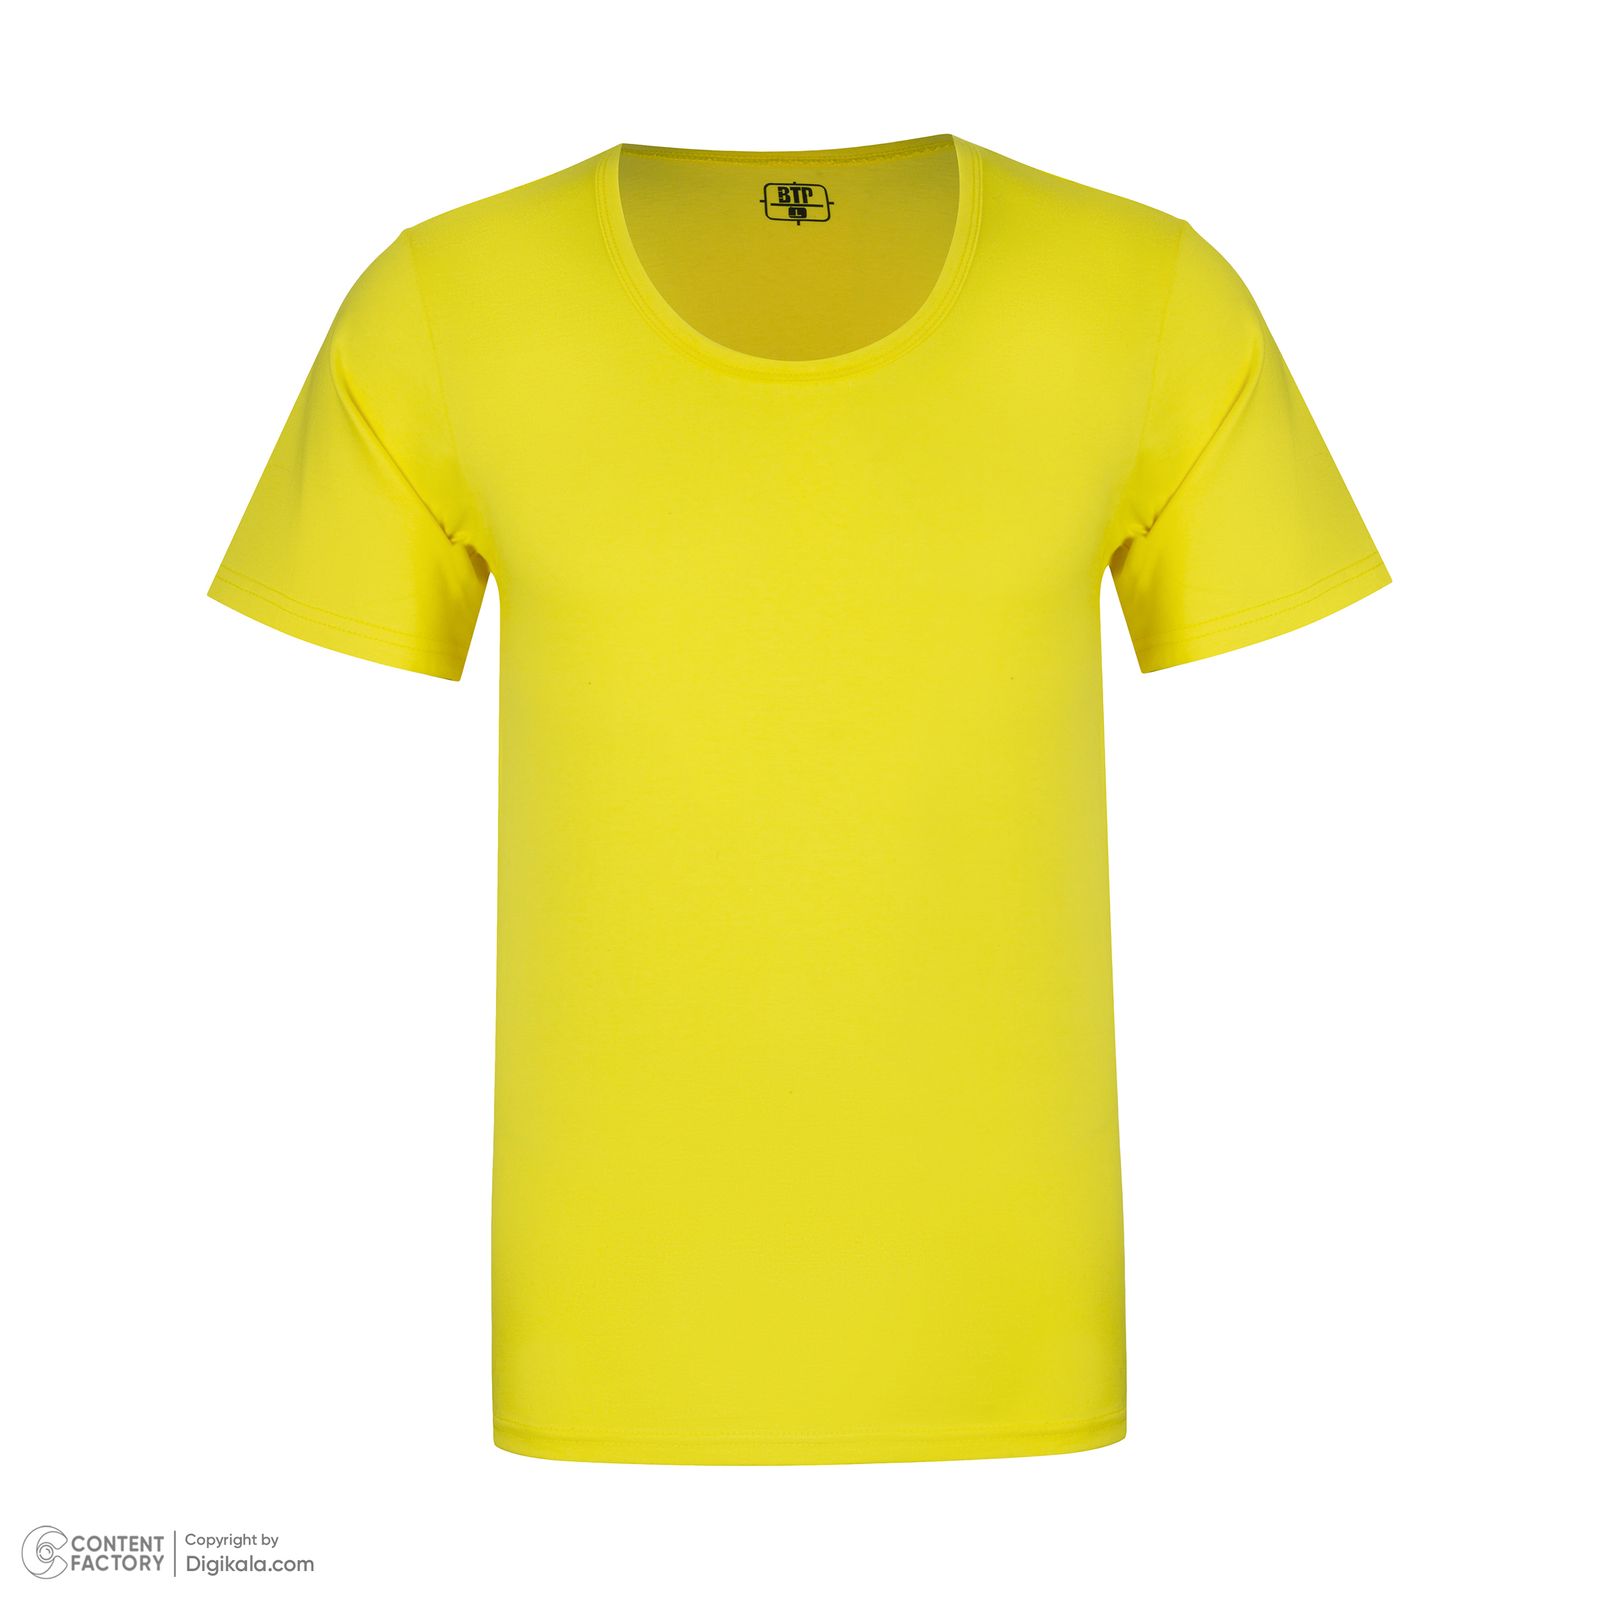 زیرپوش آستین دار مردانه برهان تن پوش مدل 5-02 رنگ زرد -  - 2